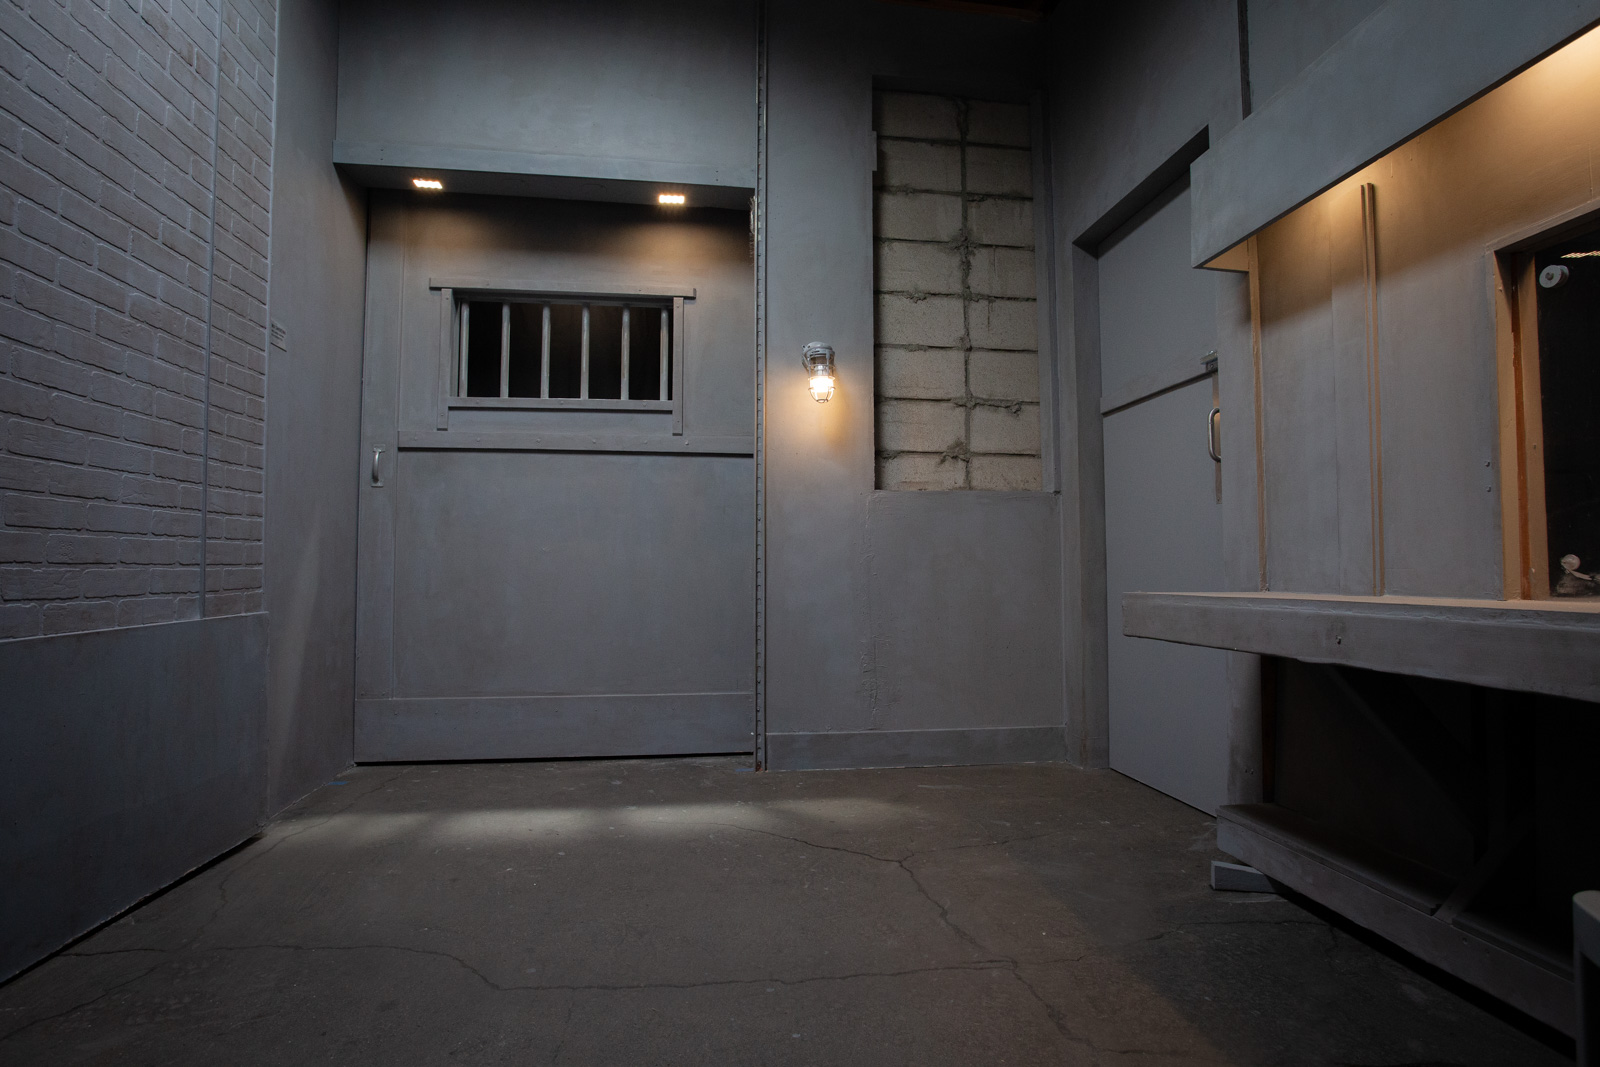 Jail visitation film set for rent in LA